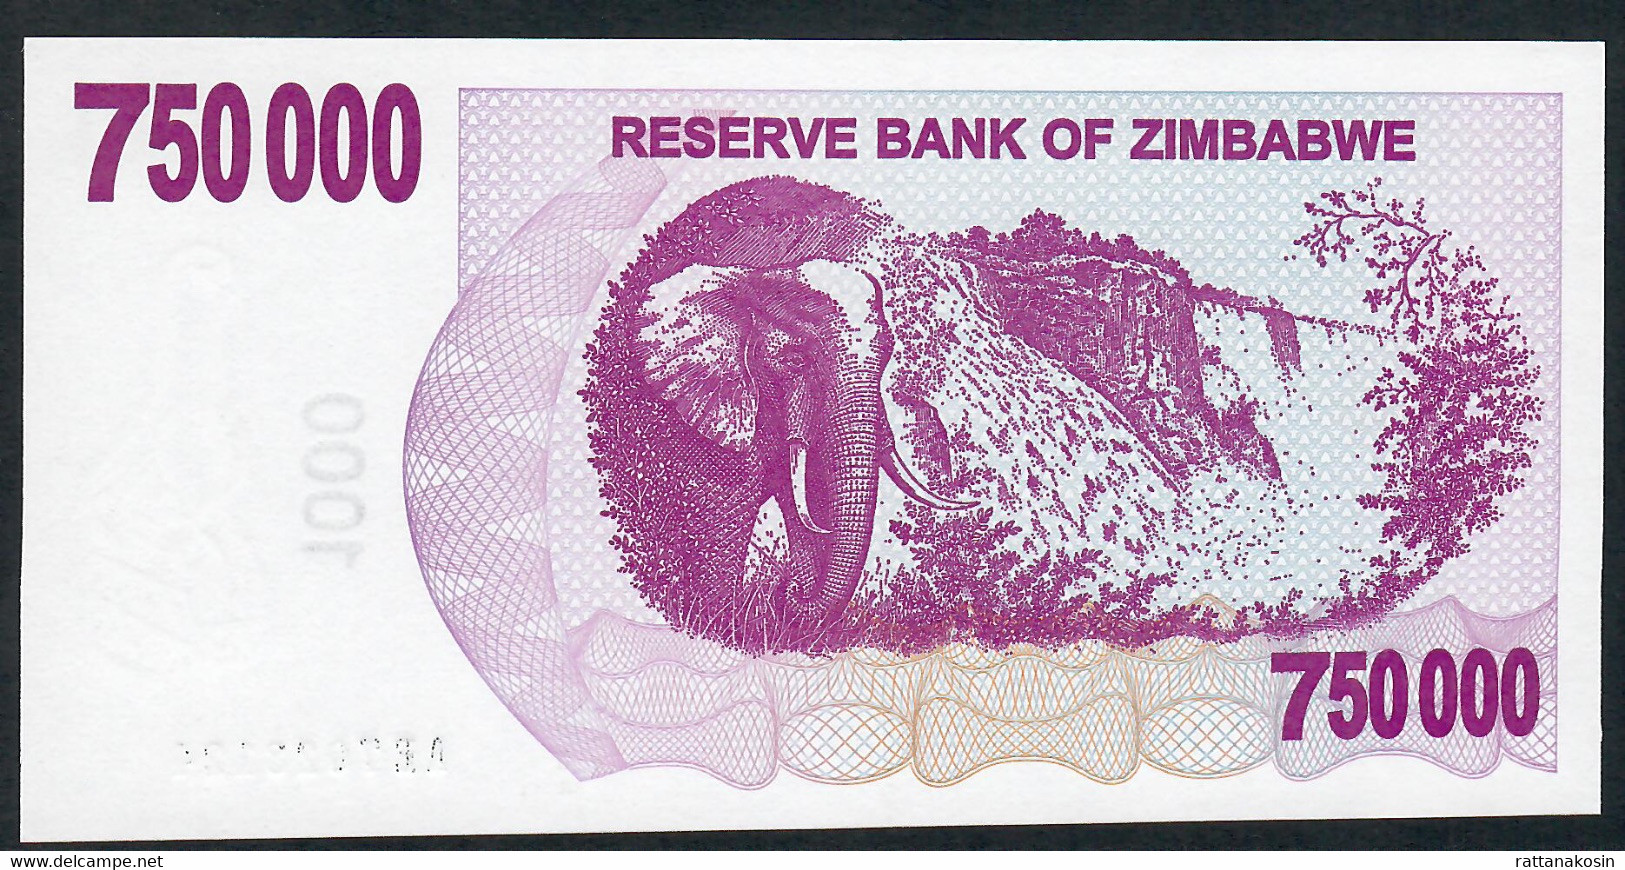 ZIMBABWE P52 750.000 DOLLARS 31.12.2007 To 30.6.2008 #AE Signature 5 UNC. - Simbabwe